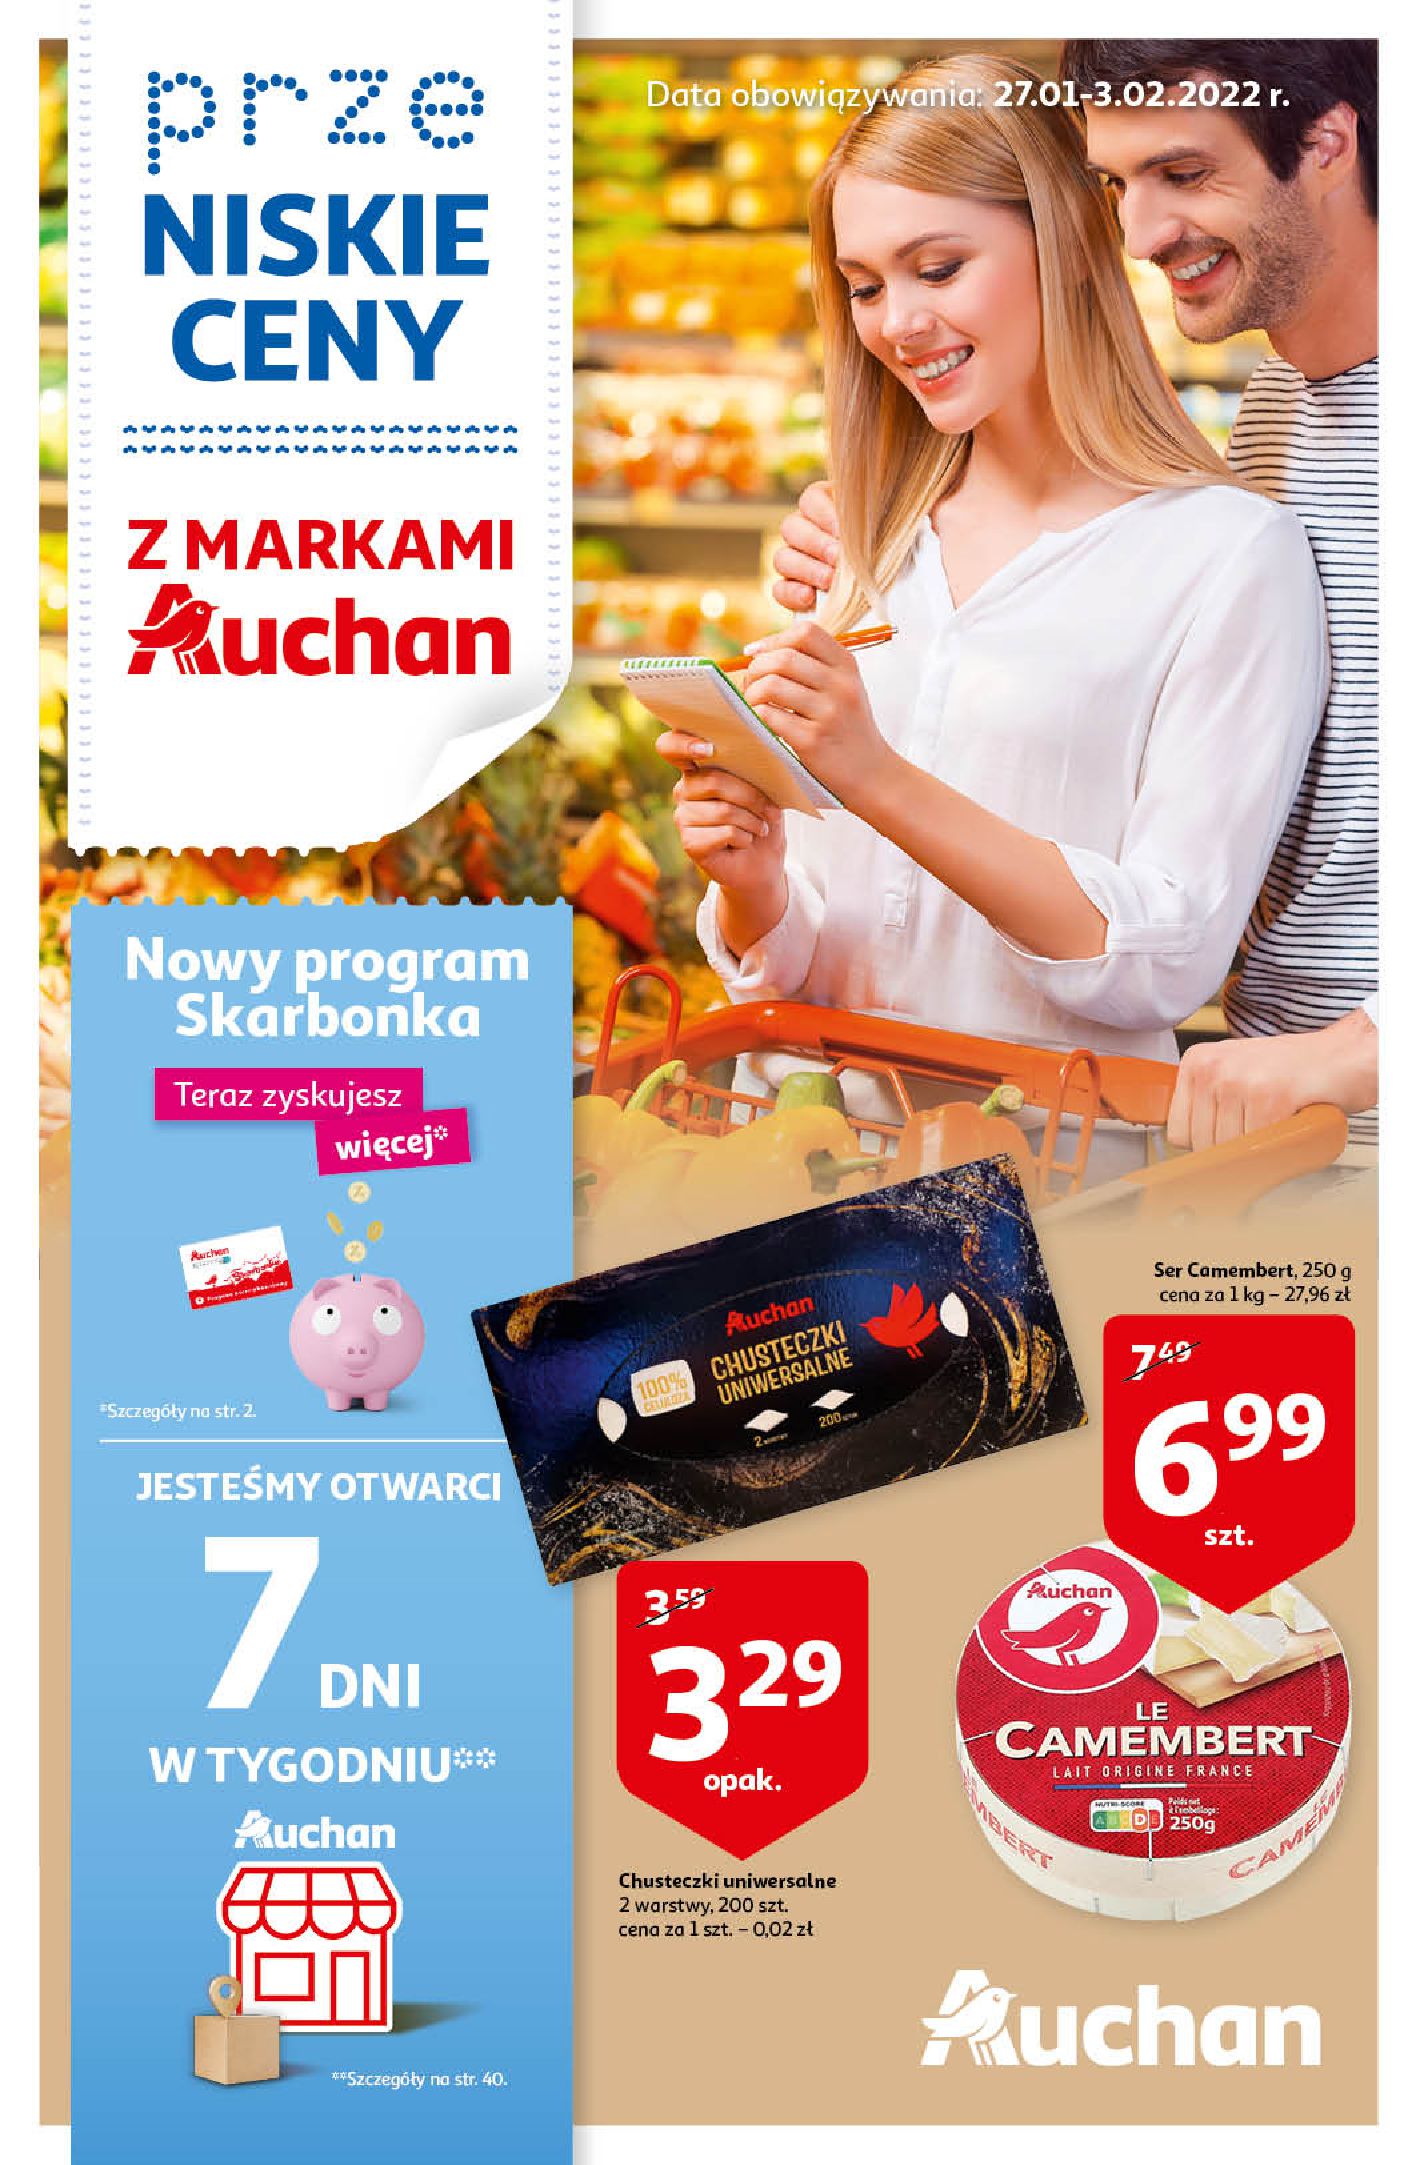 Gazetka Auchan: Gazetka Auchan - przeNISKIE CENY z markami Auchan - 26.01.2022